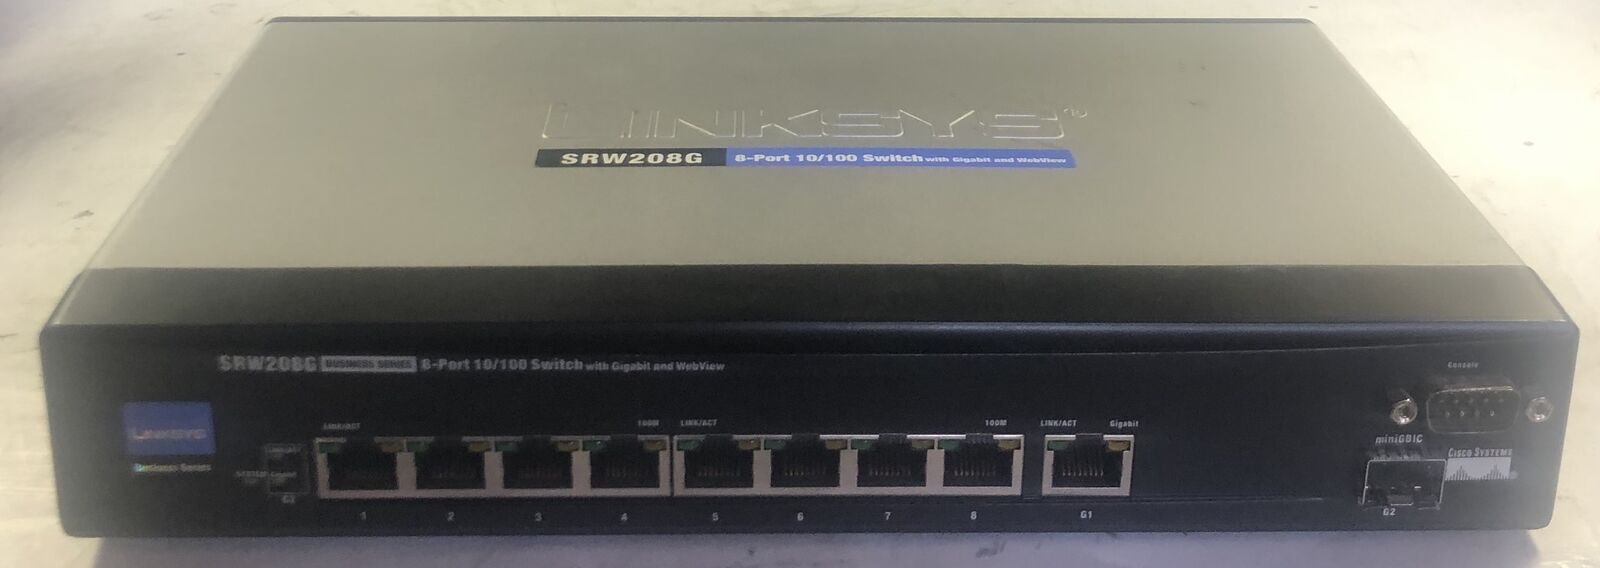 Cisco Linksys SRW208G 8-Port Switch with Gigabit & Webview